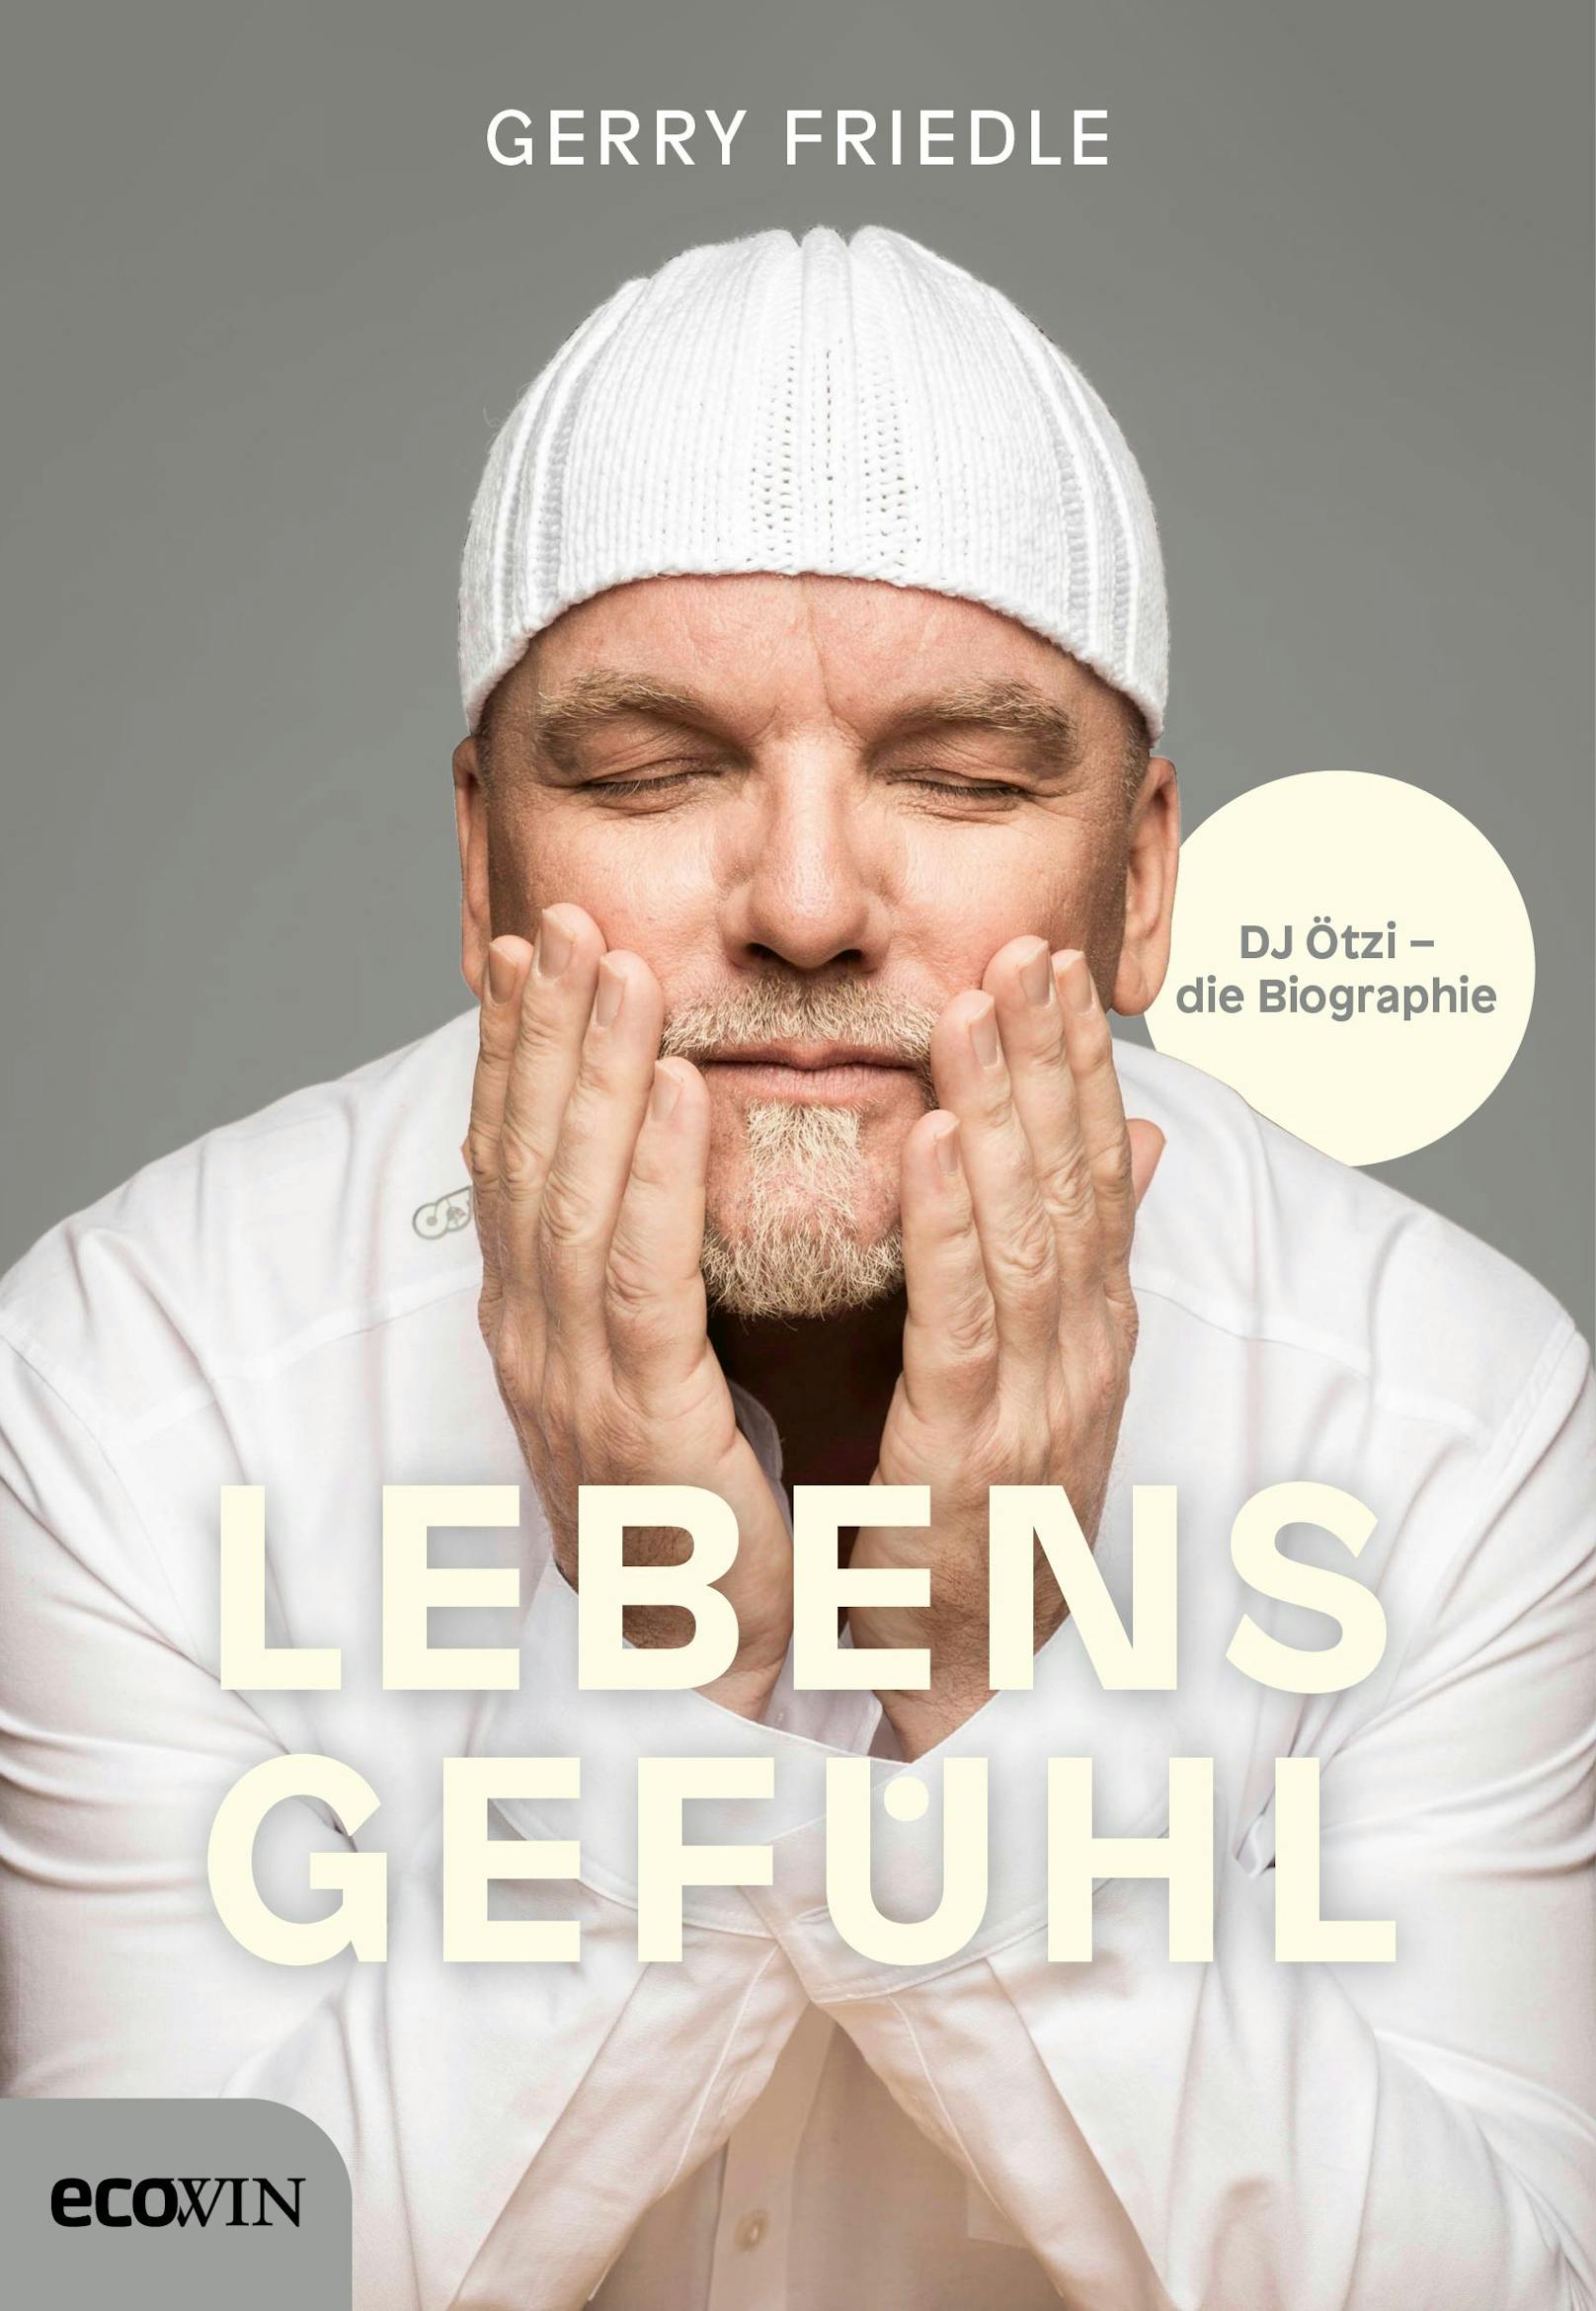 Die Biografie von <strong>DJ Ötzi</strong>&nbsp;ist mehr als nur ein Buch, es ist ein: "Lebensgefühl". Gerry zeigt darin viel Privates, Verrücktes, Nachdenkliches und Liebevolles, dazu gibt's seine ganz persönlichen "Life Hacks".